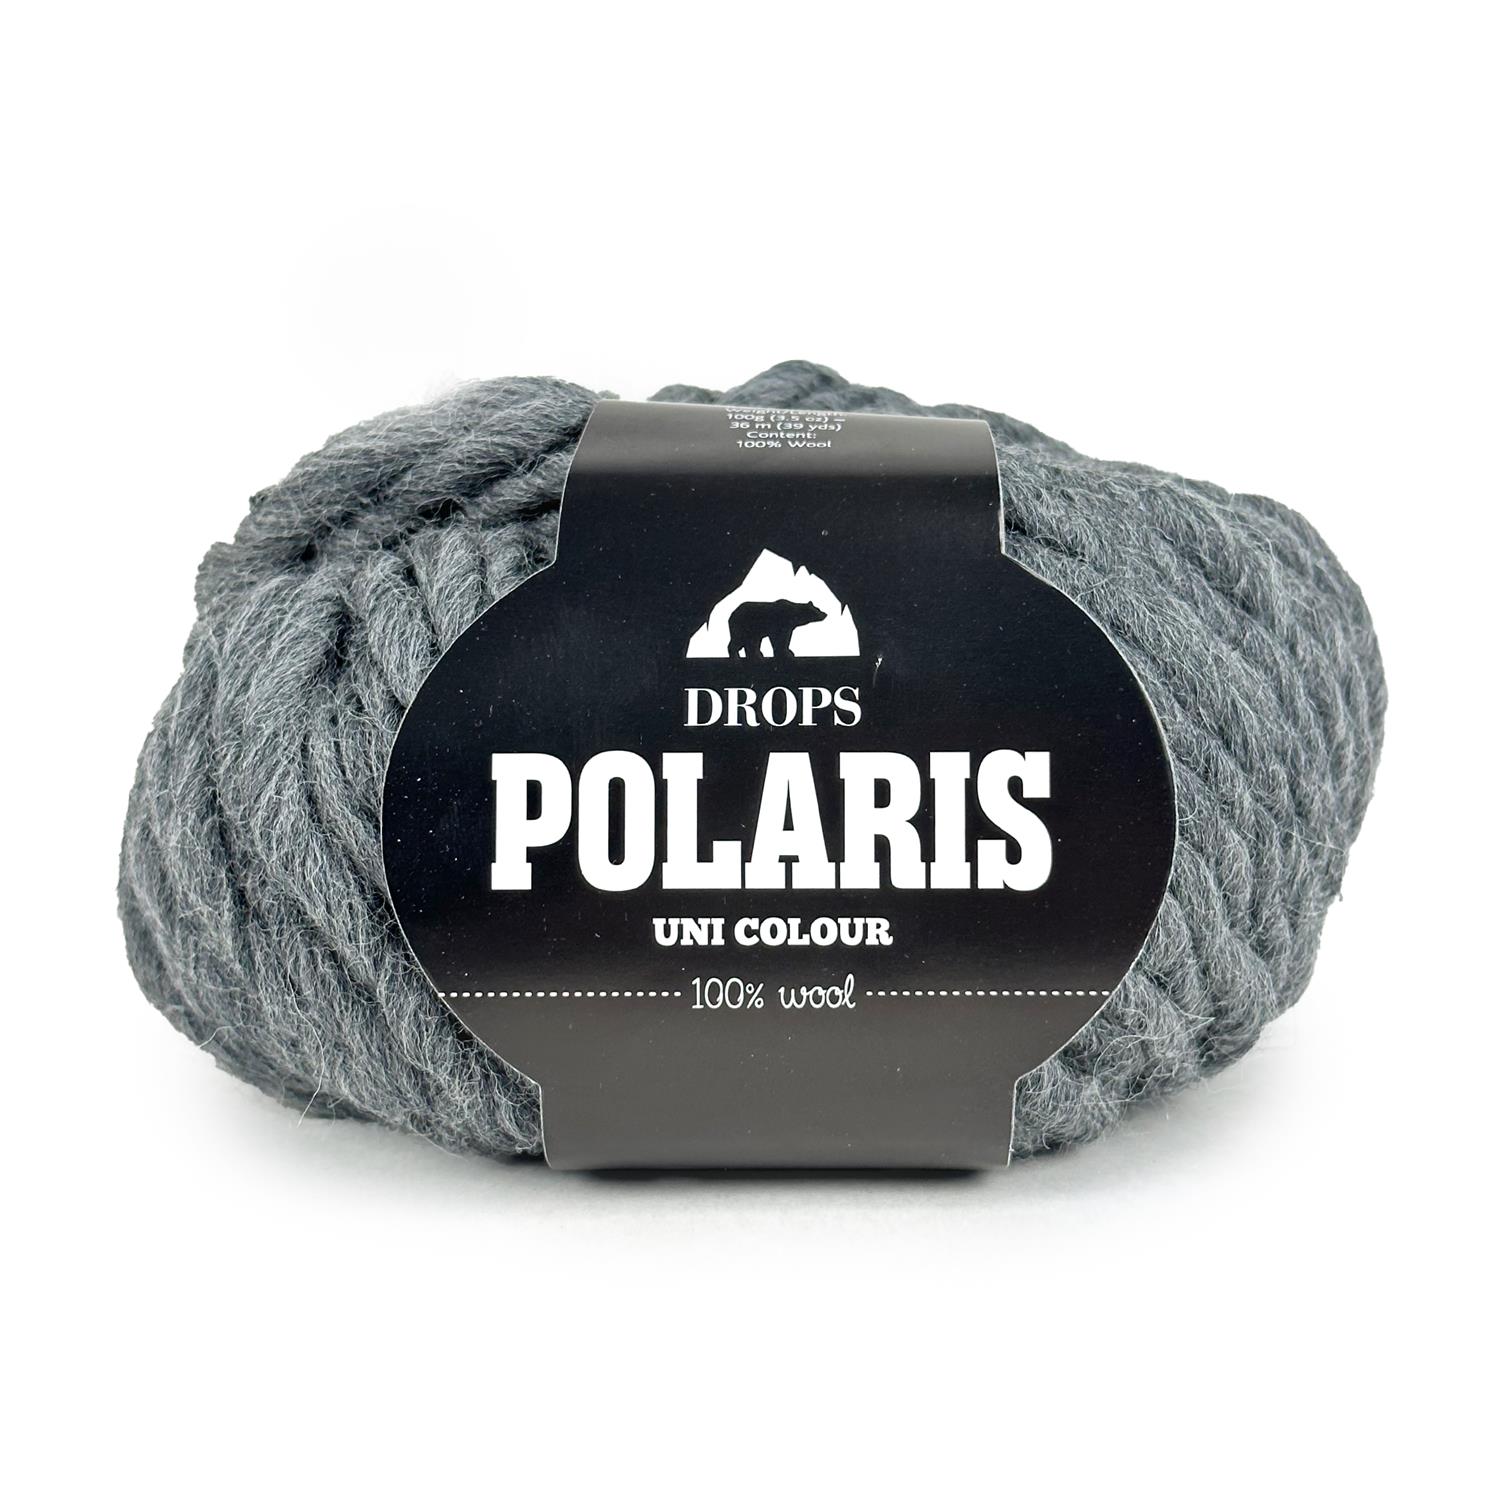 DROPS Polaris Uni Colour (100g/36m)